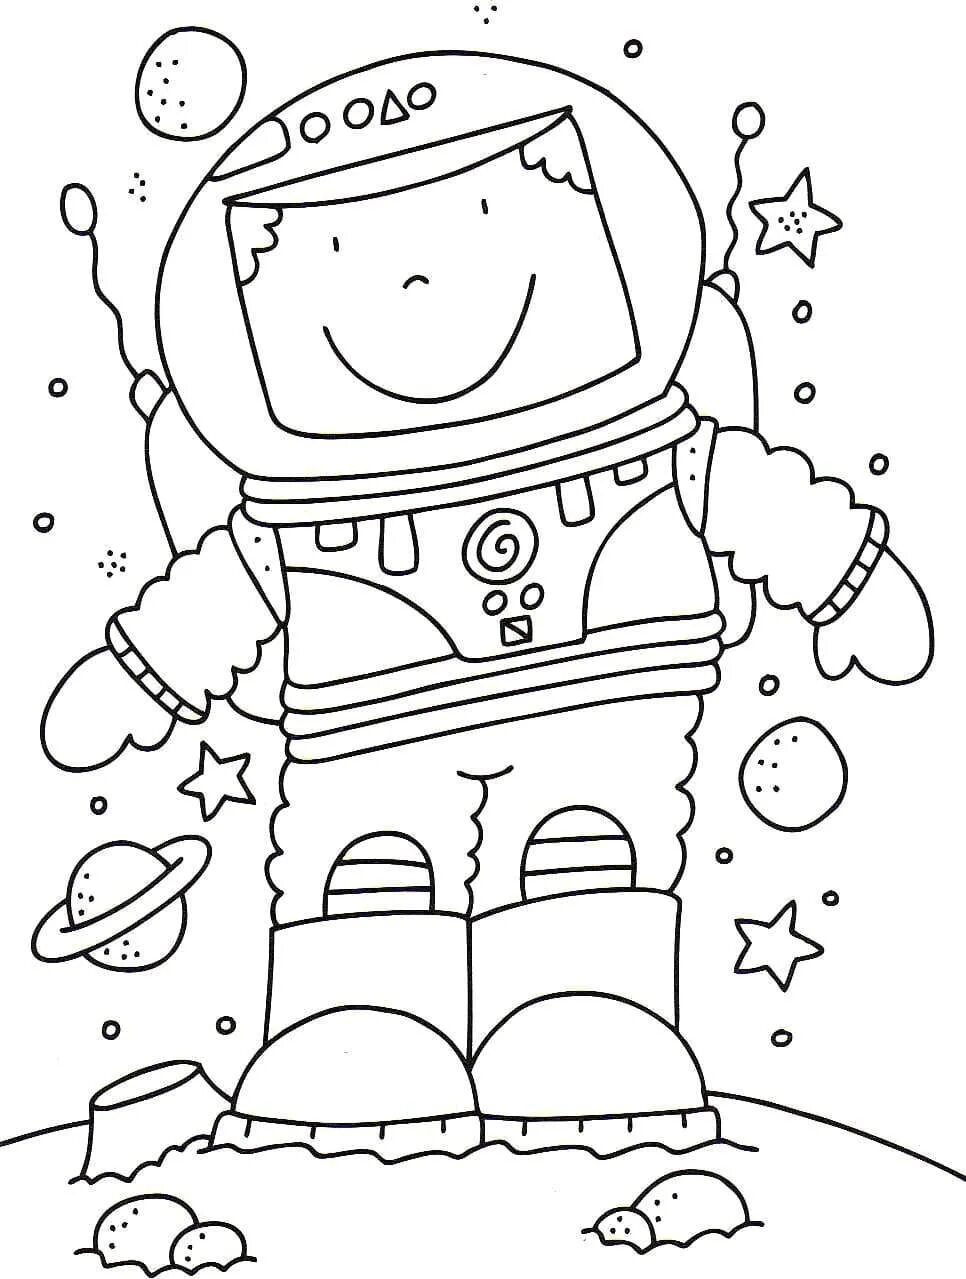 Рисунок на тему космос раскраска. Космос раскраска для детей. Раскраска. В космосе. Космические раскраски для детей. Детские раскраски космос.